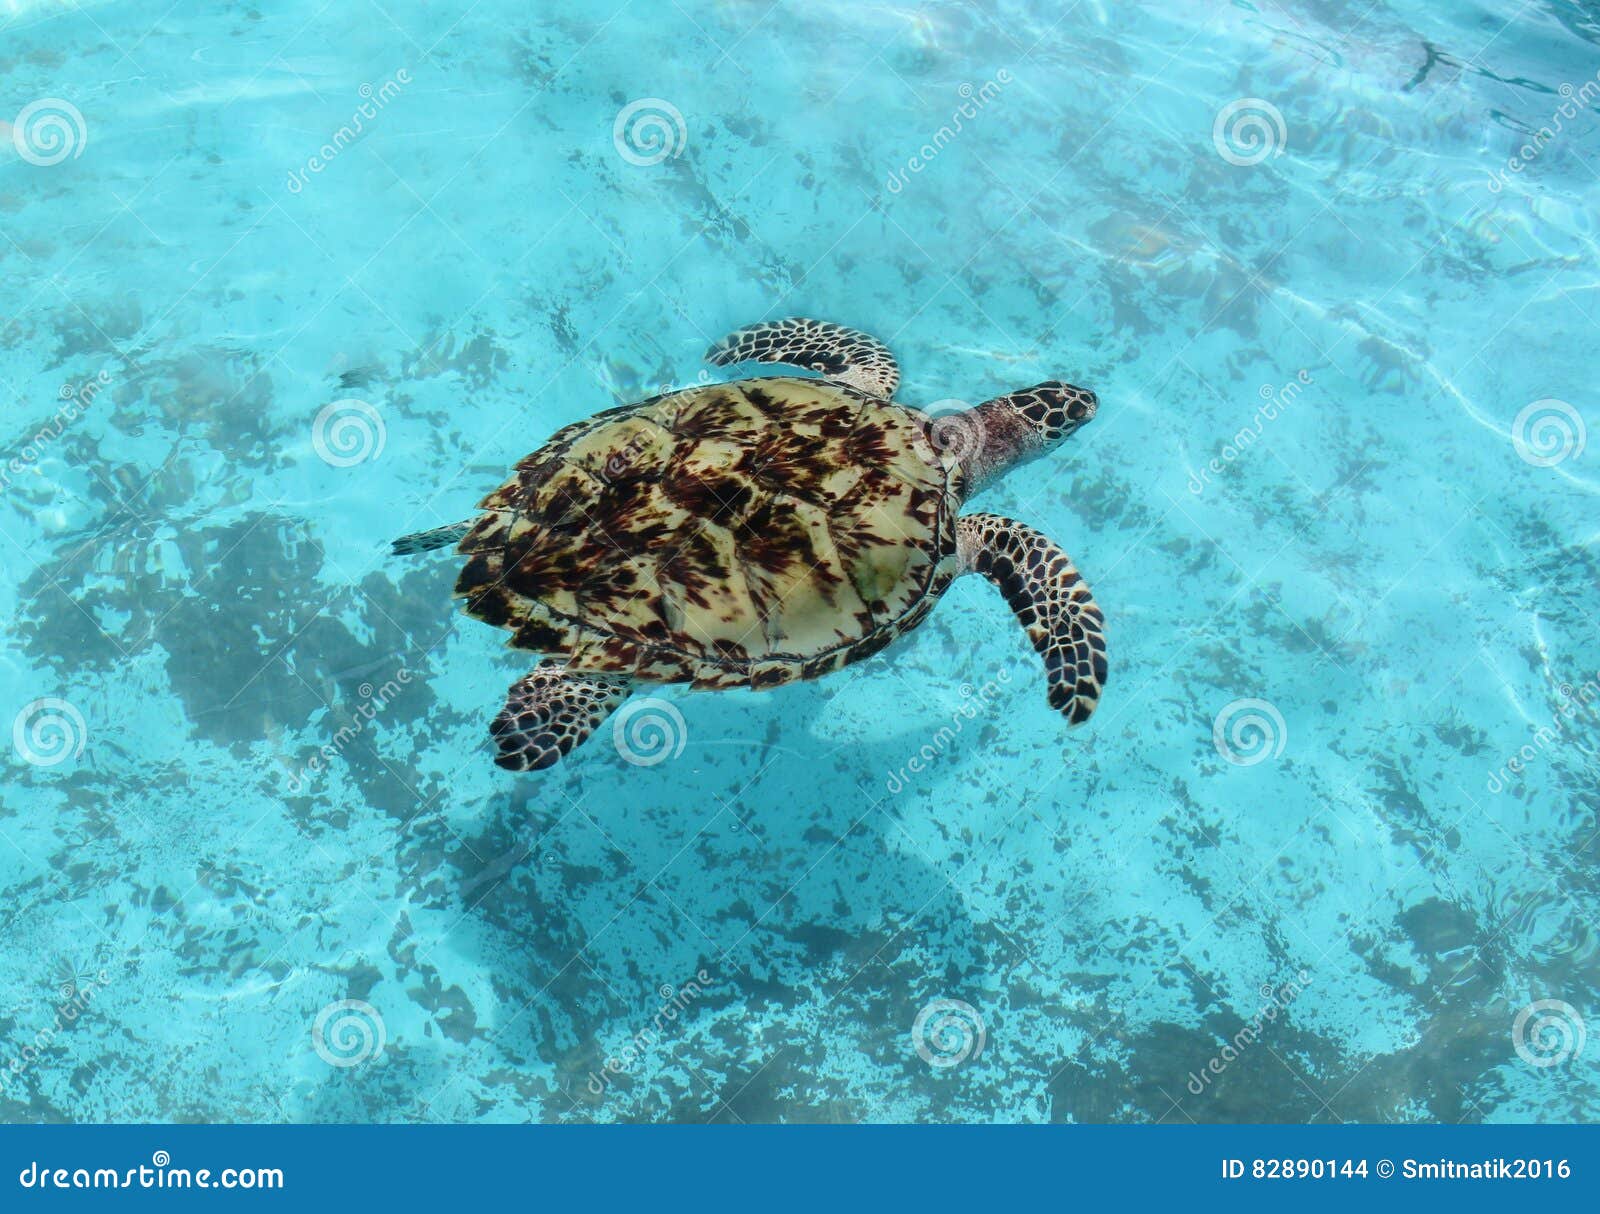 gereedschap persoon soep De schildpad in het water stock foto. Image of vreedzaam - 82890144